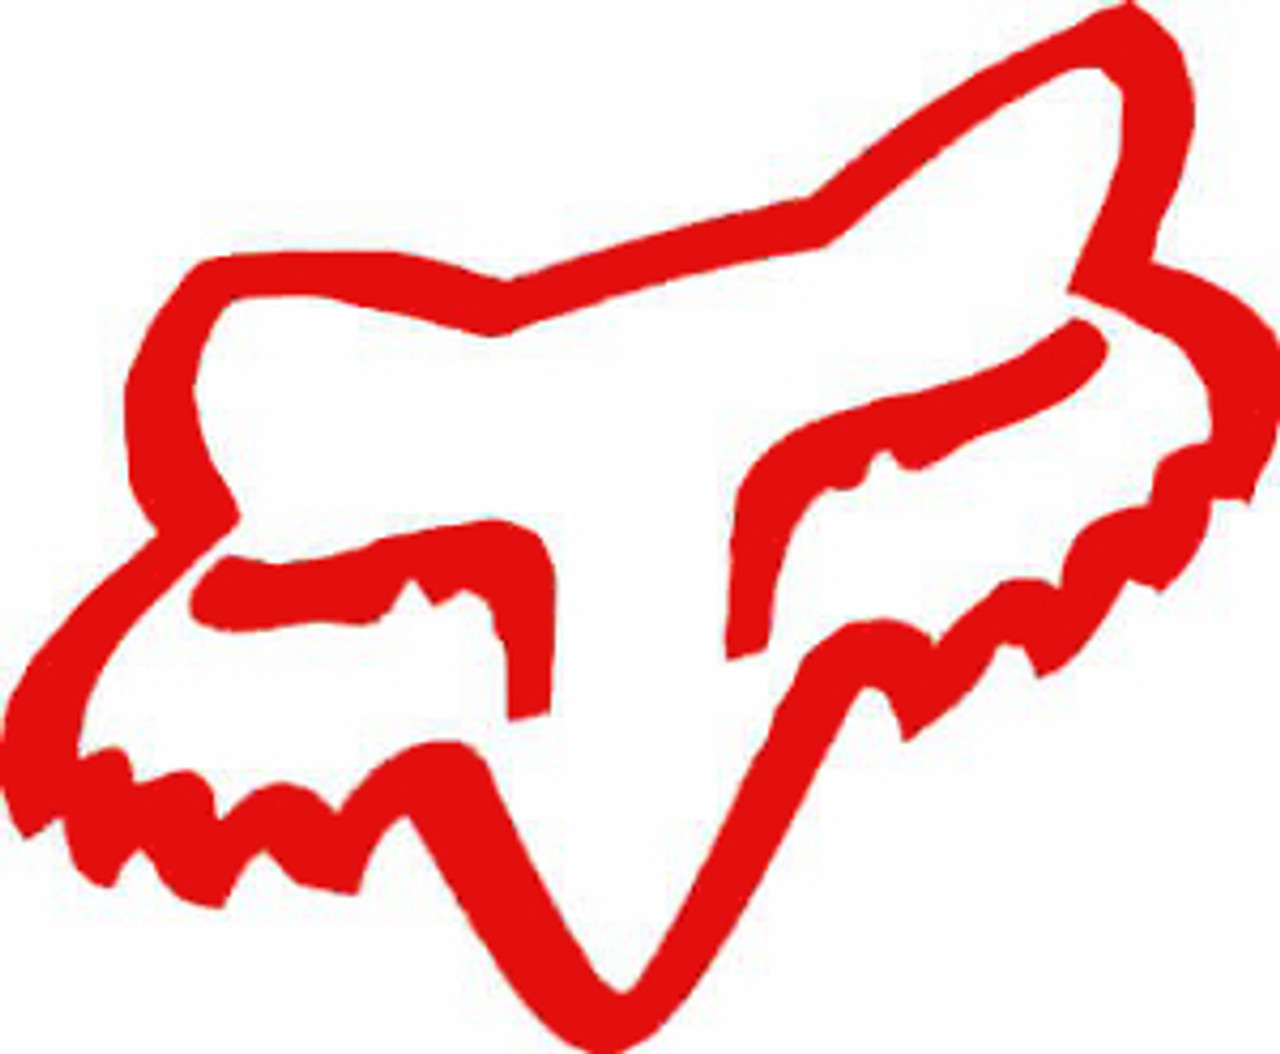 fox racing stencil